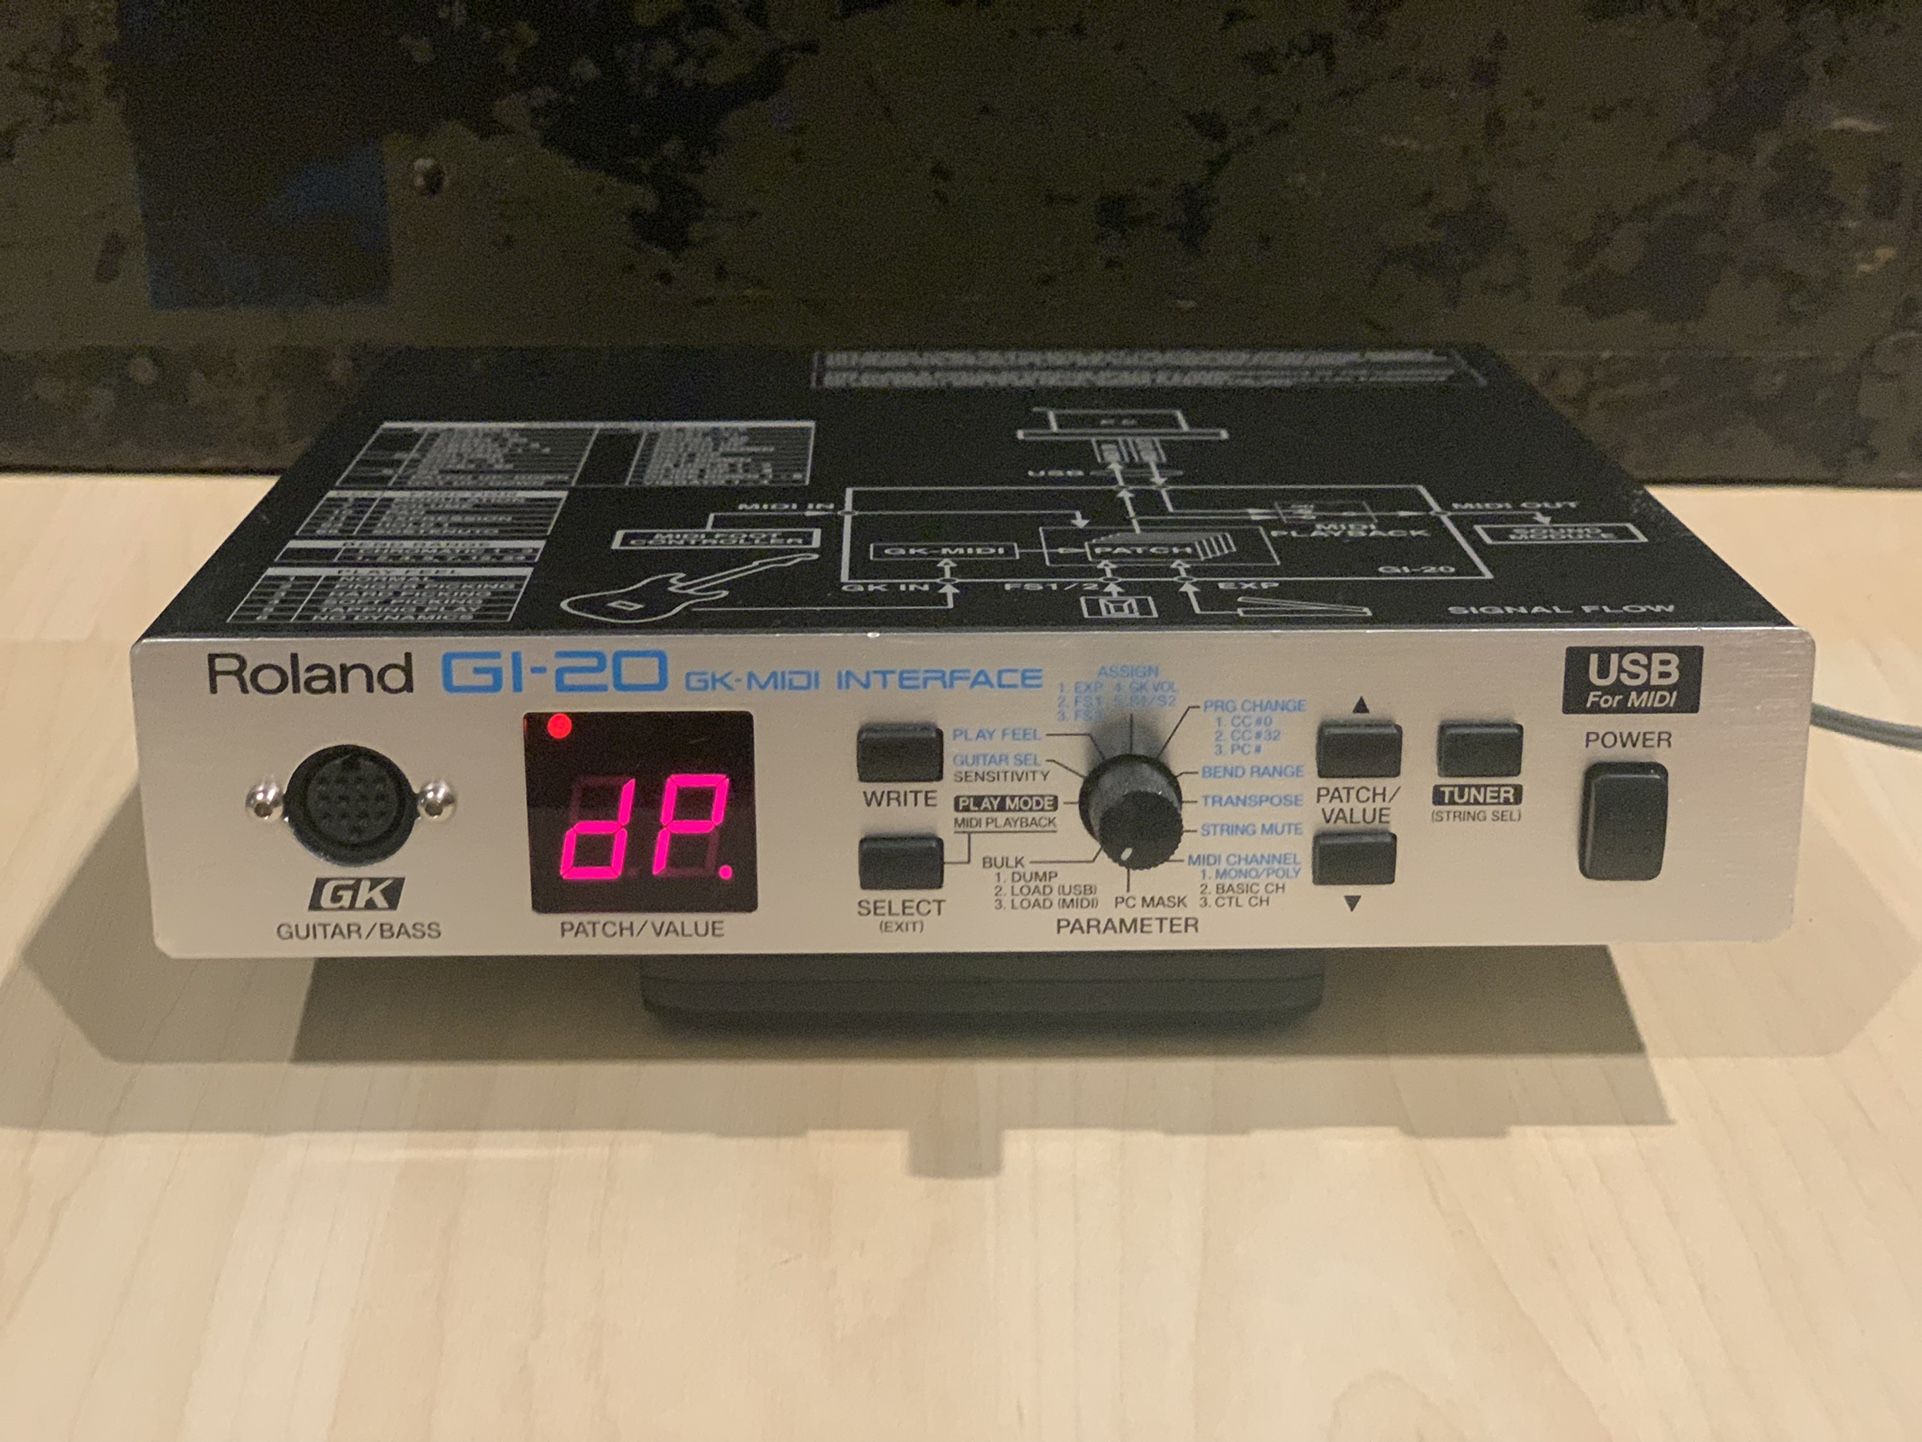 Roland Gi 20 Guitar/Bass MIDI Interface